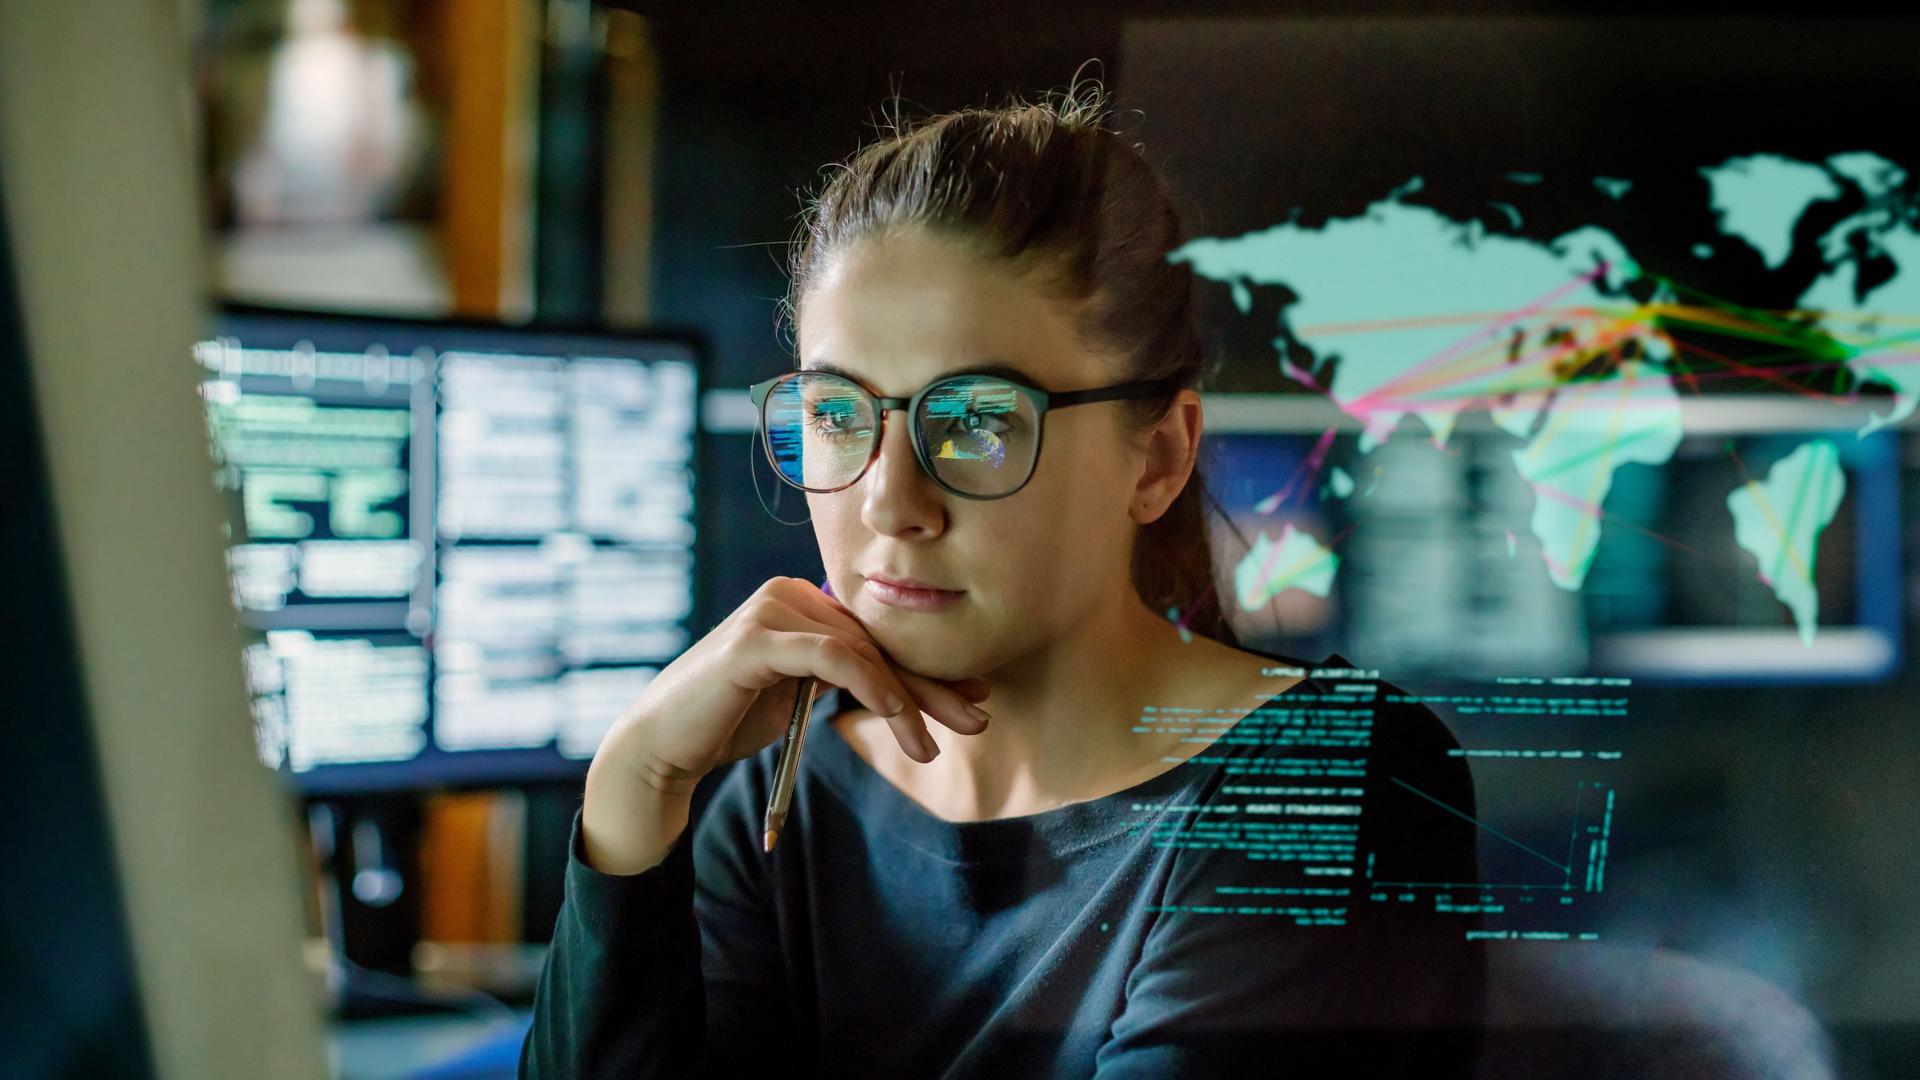 Jungen Frau mit Brille, die in einem dunklen Büro von Computermonitoren umgeben ist. Vor ihr befindet sich ein durchsichtiges Display, das eine Weltkarte mit einigen Daten zeigt.